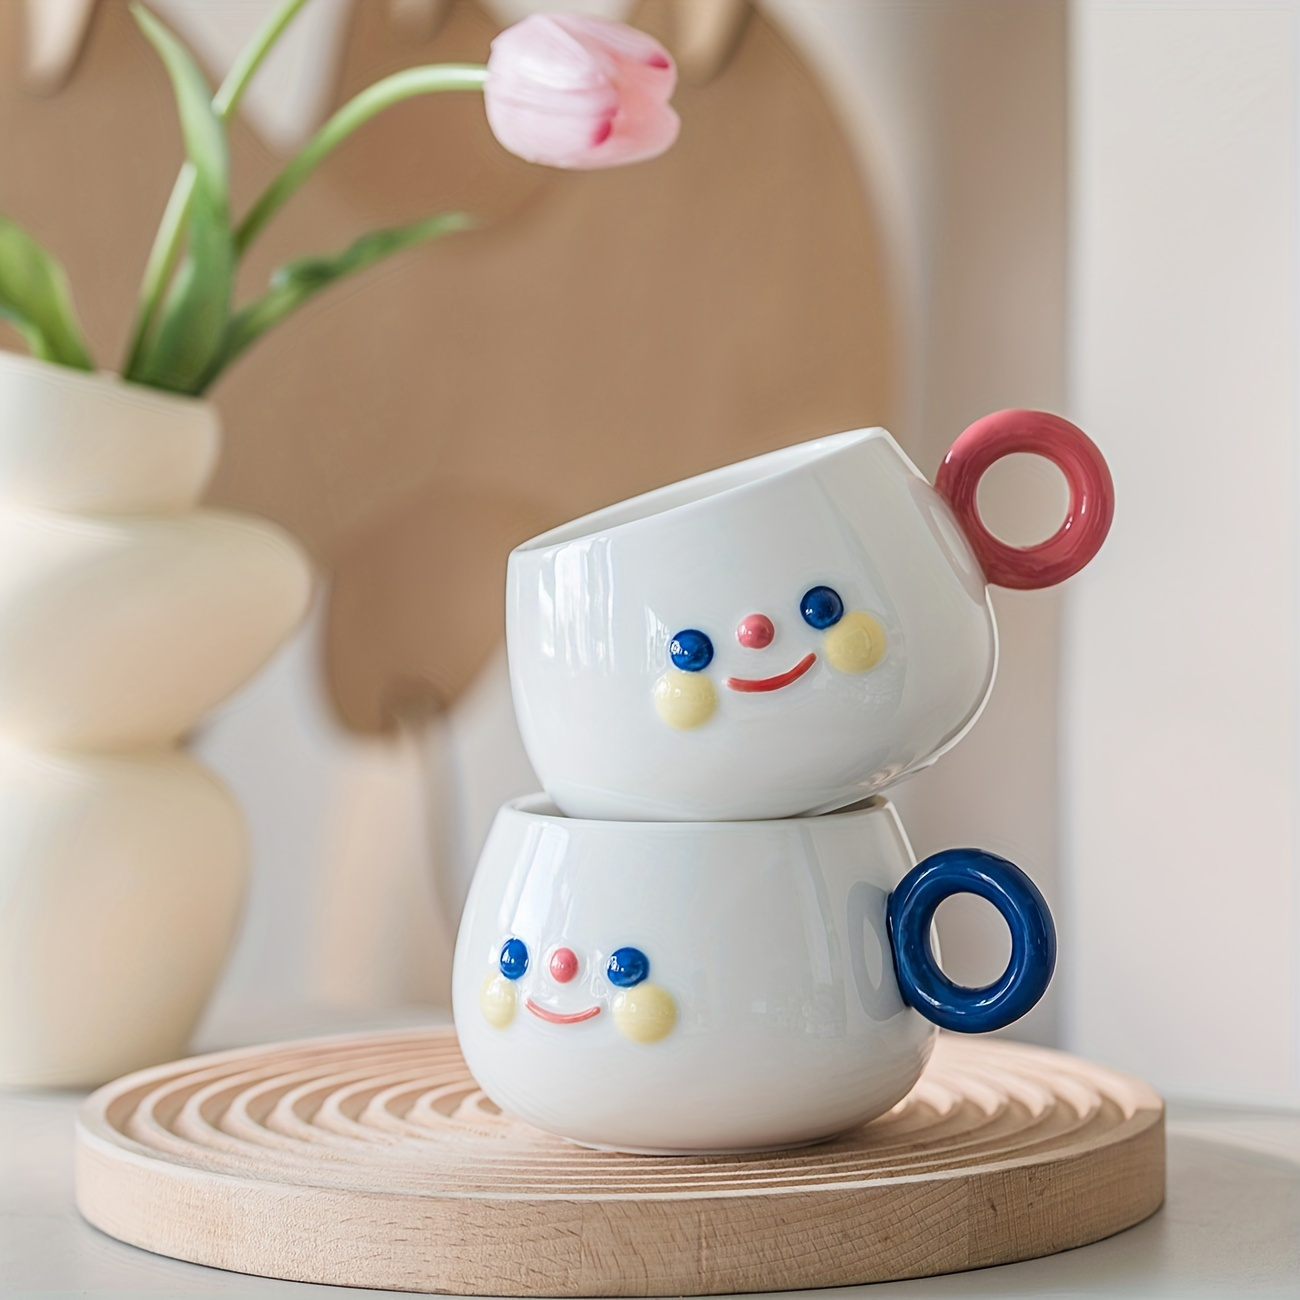 Flower Smiley Face Preppy Ceramic Mug 11oz Ceramic coffee mug Gift